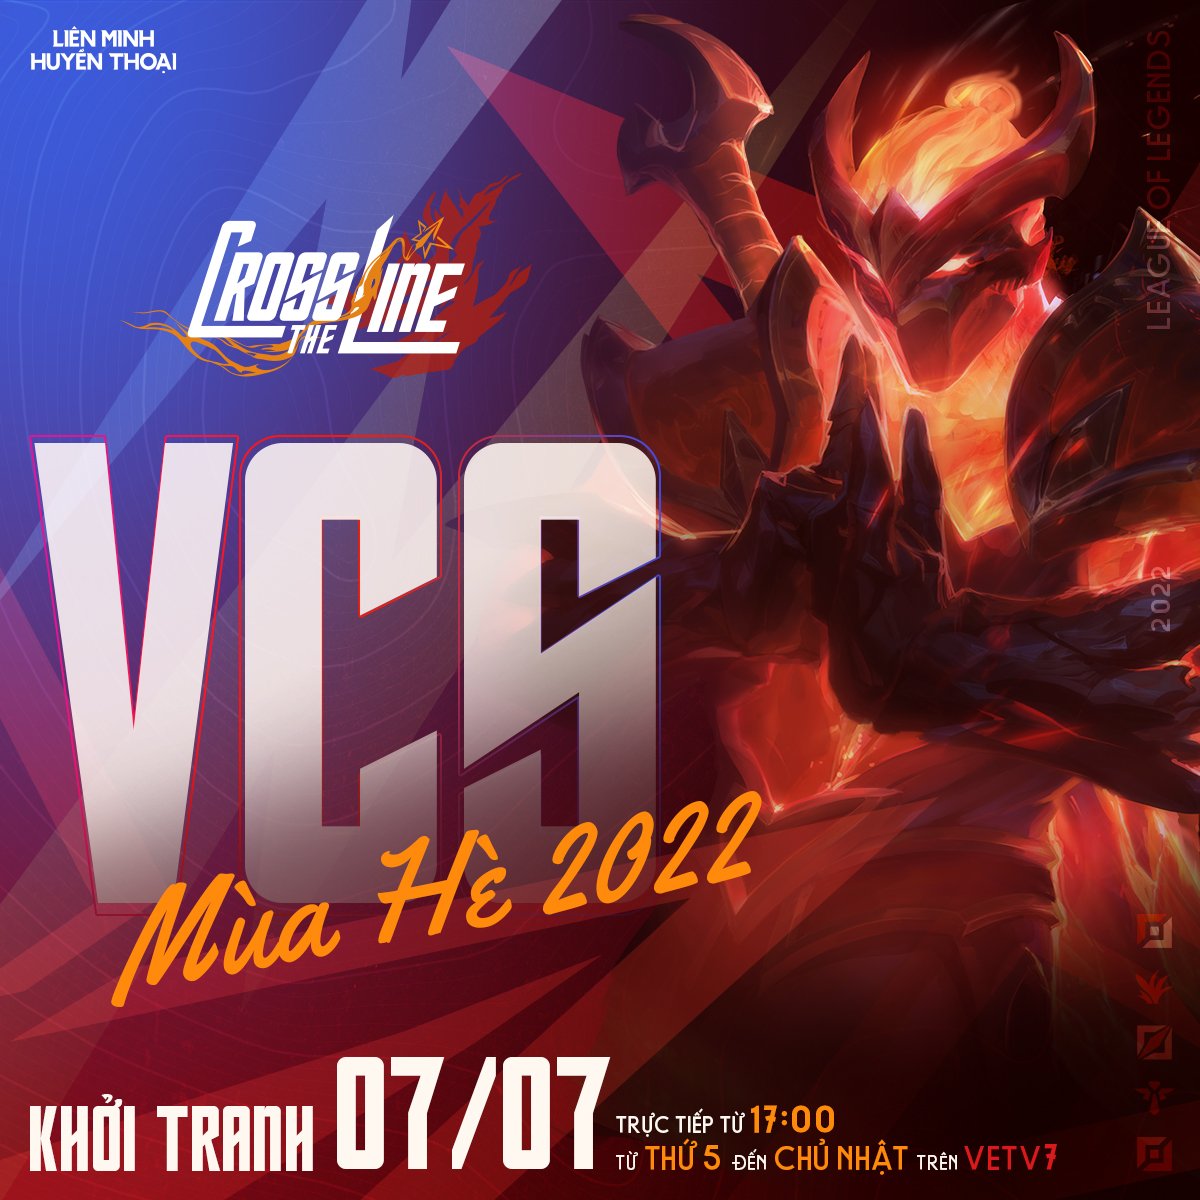 VCS Mùa Hè 2022 đạt lượt xem cực cao dù mới tuần đầu tiên khiến cộng đồng phấn khích - Ảnh 1.